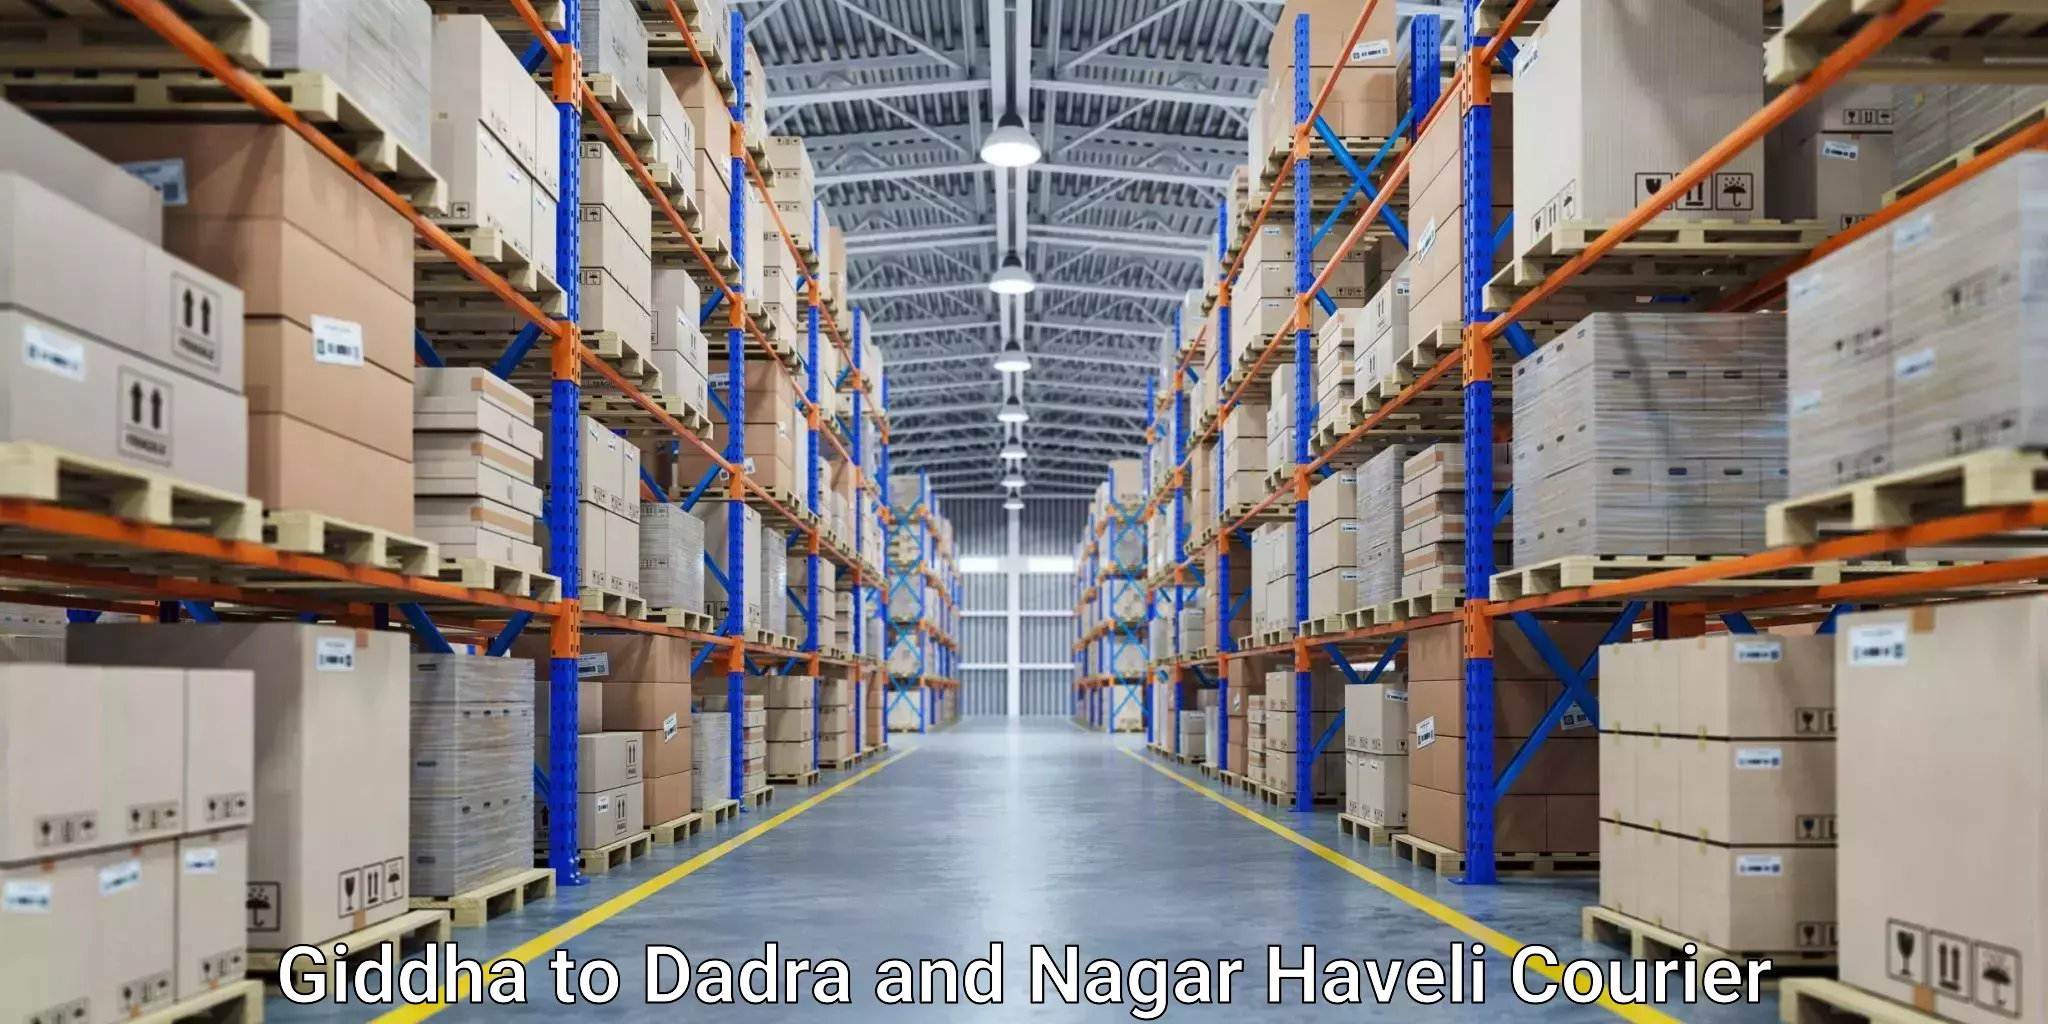 Trackable shipping service Giddha to Dadra and Nagar Haveli